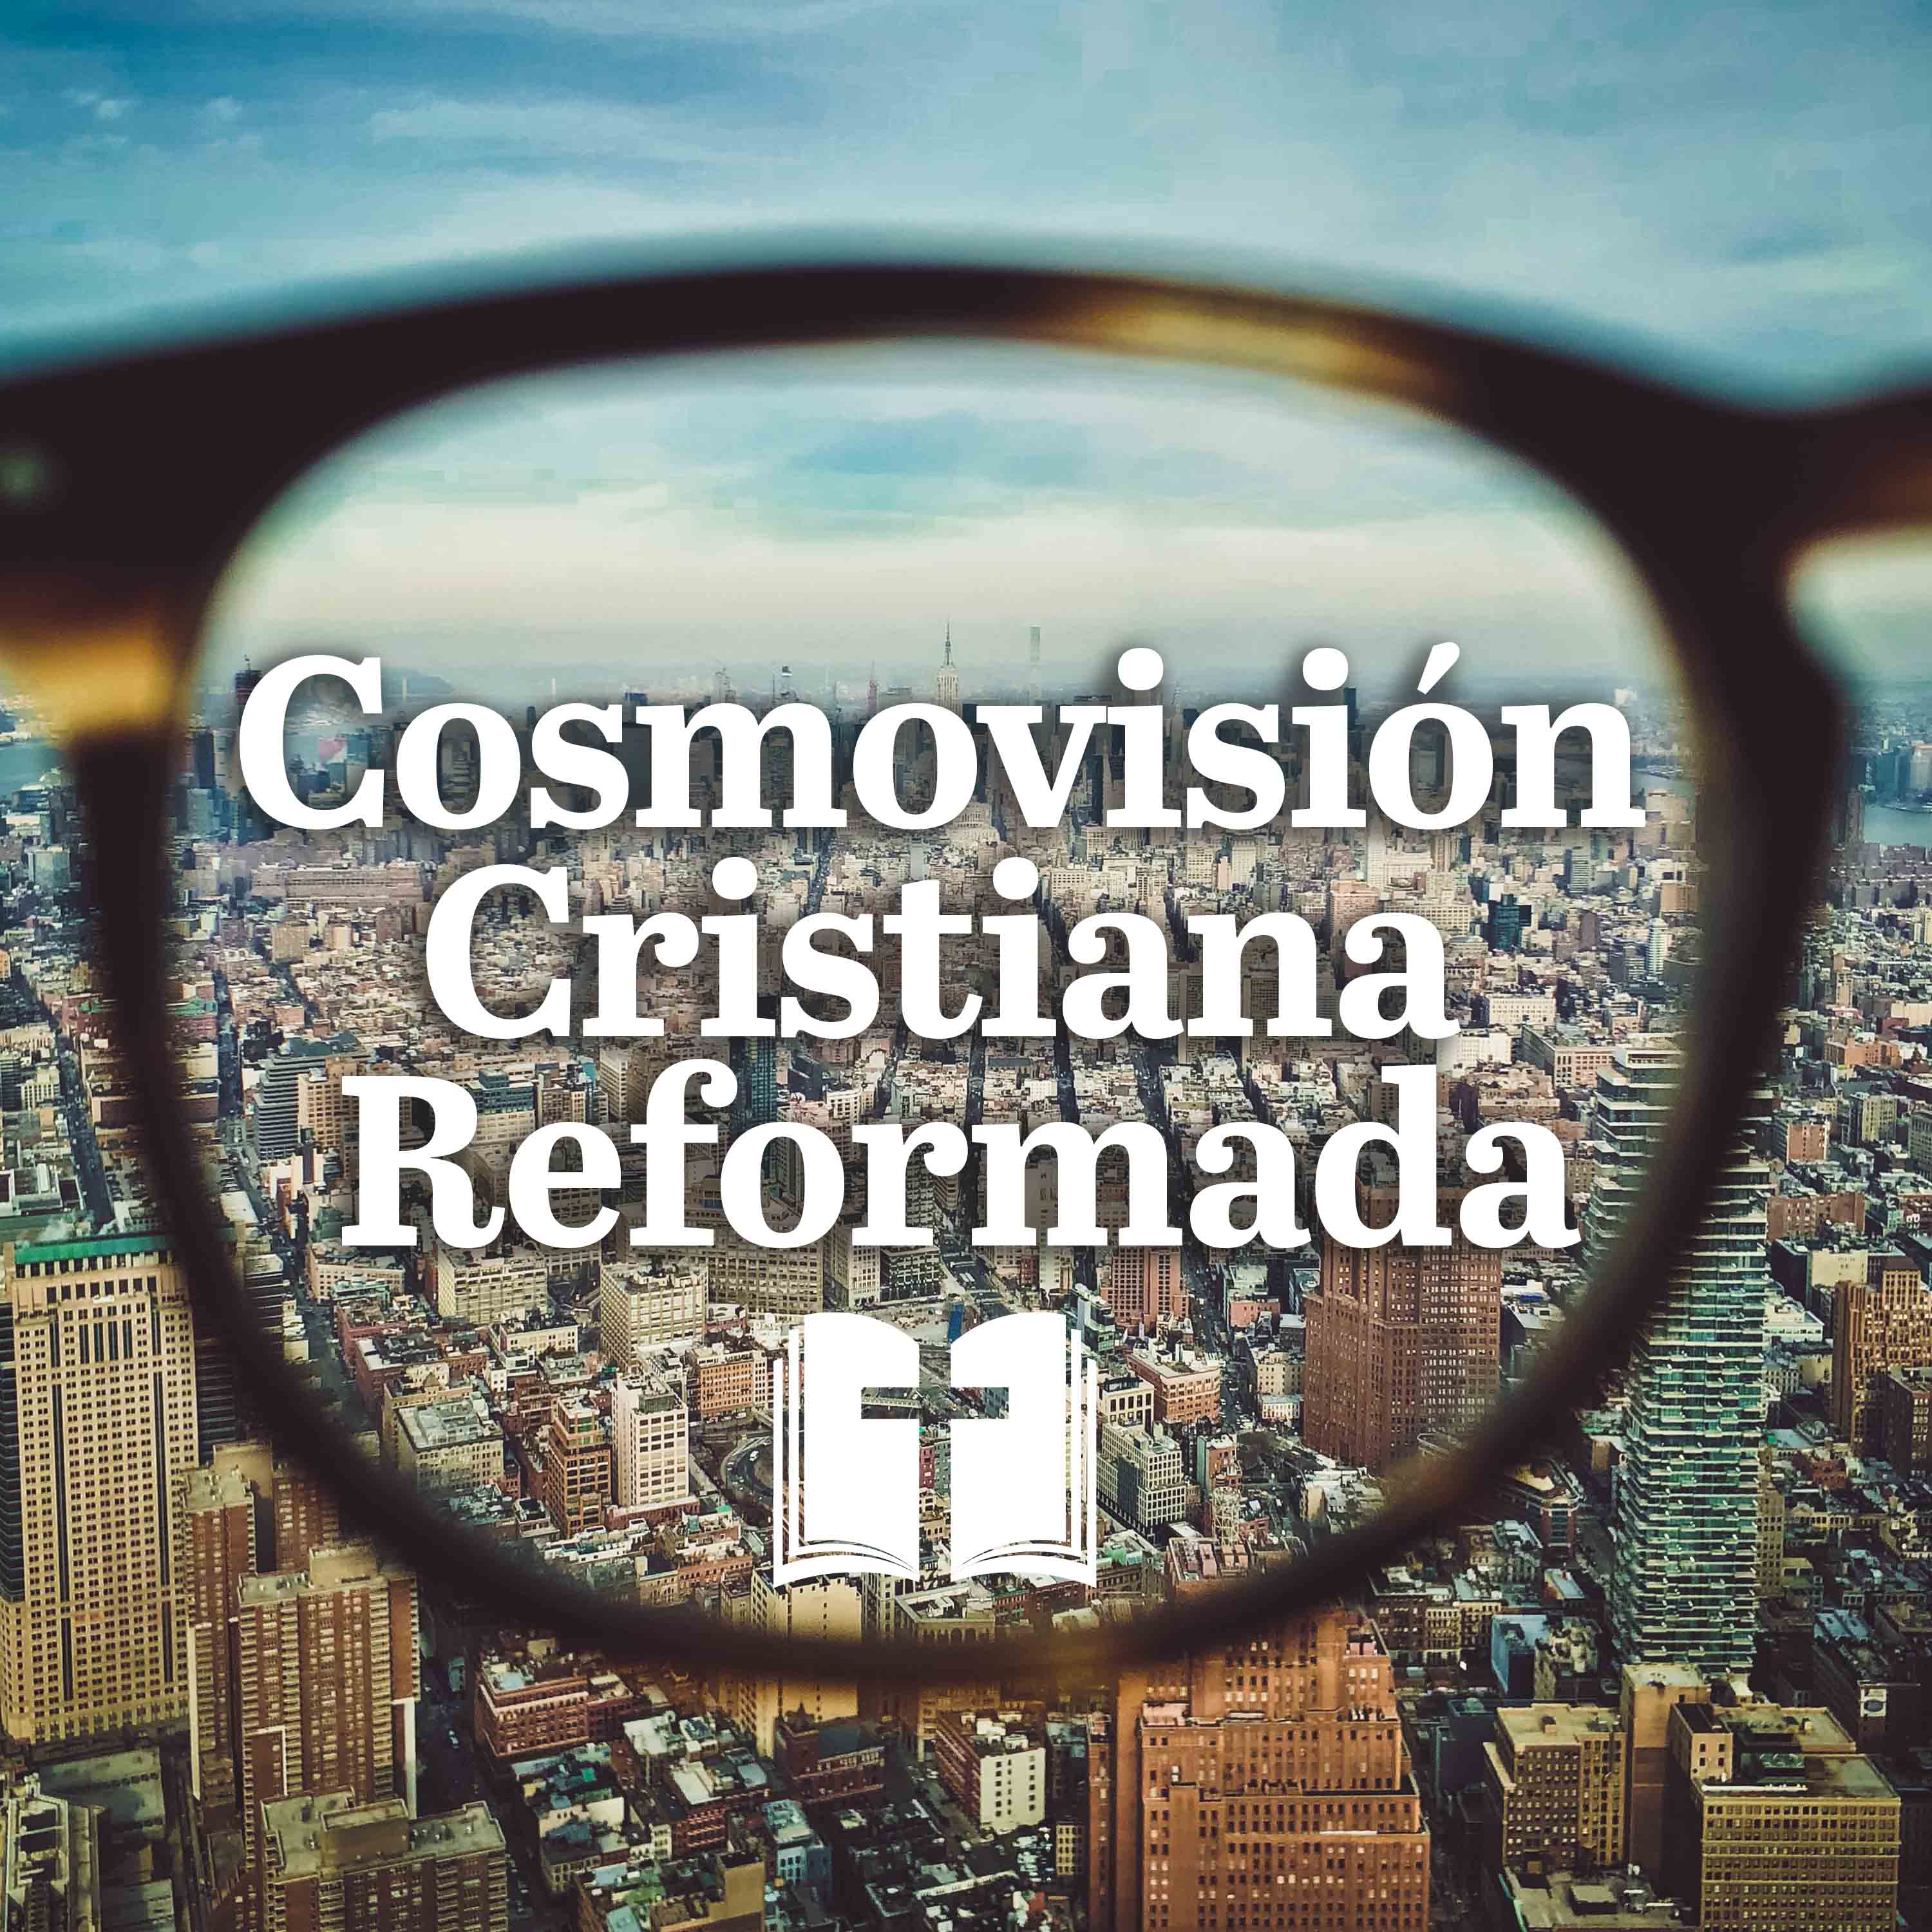 Artwork for Cosmovisión Cristiana Reformada